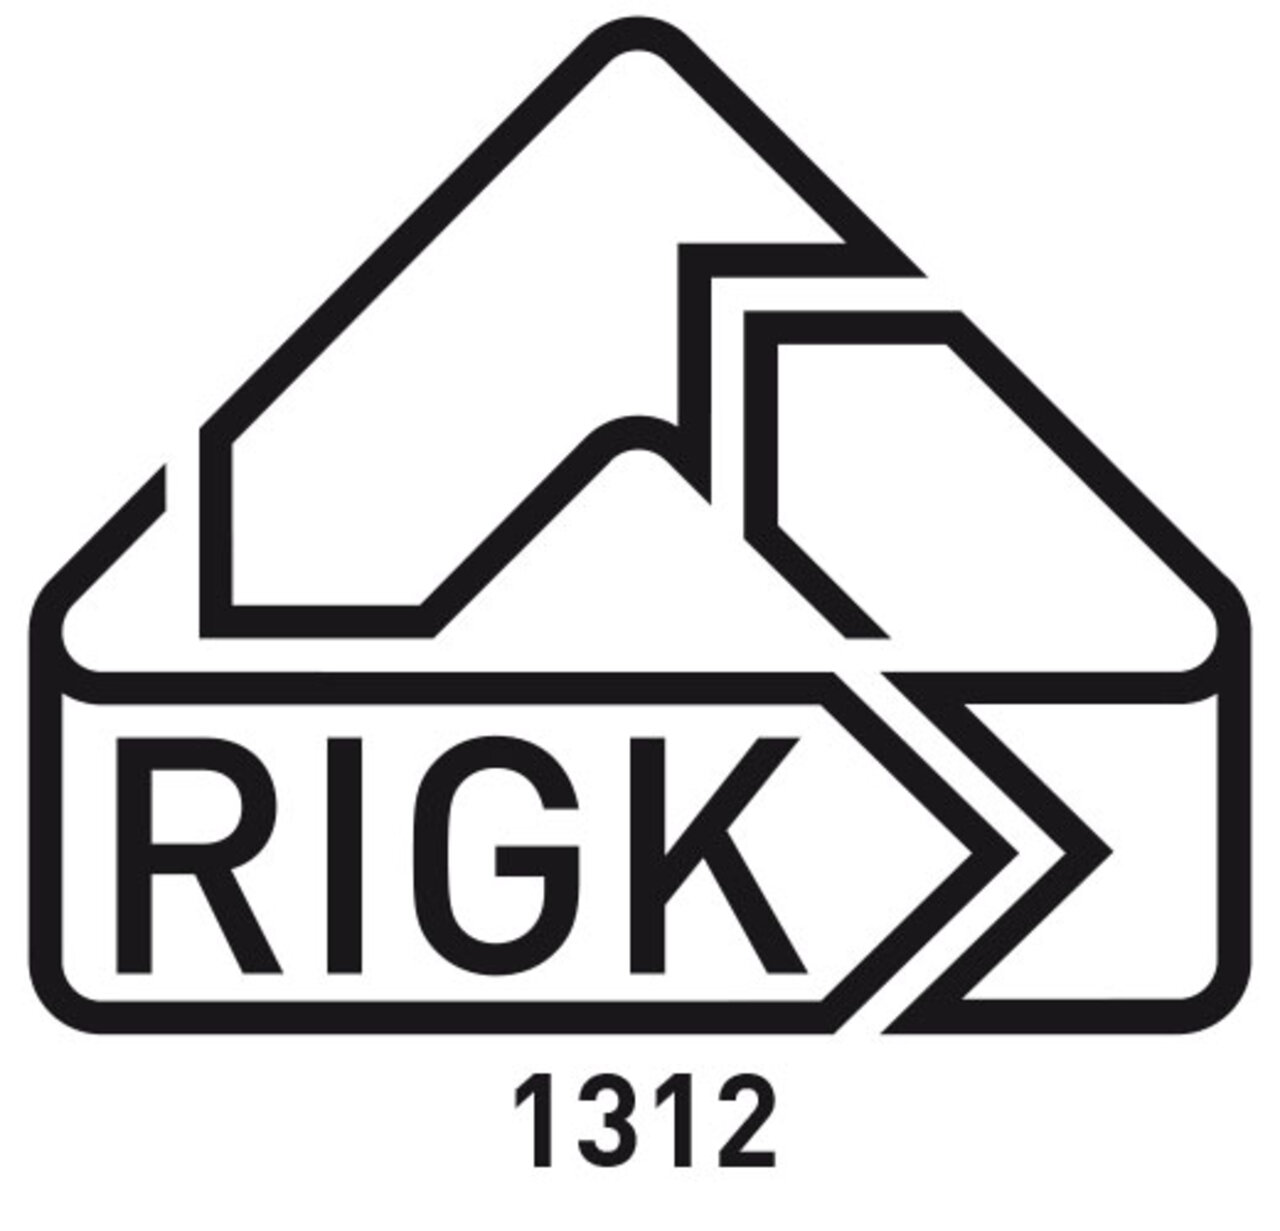 Freiwillige Abfallrücknahme für Verpackungen mit dem RIGK-Logo